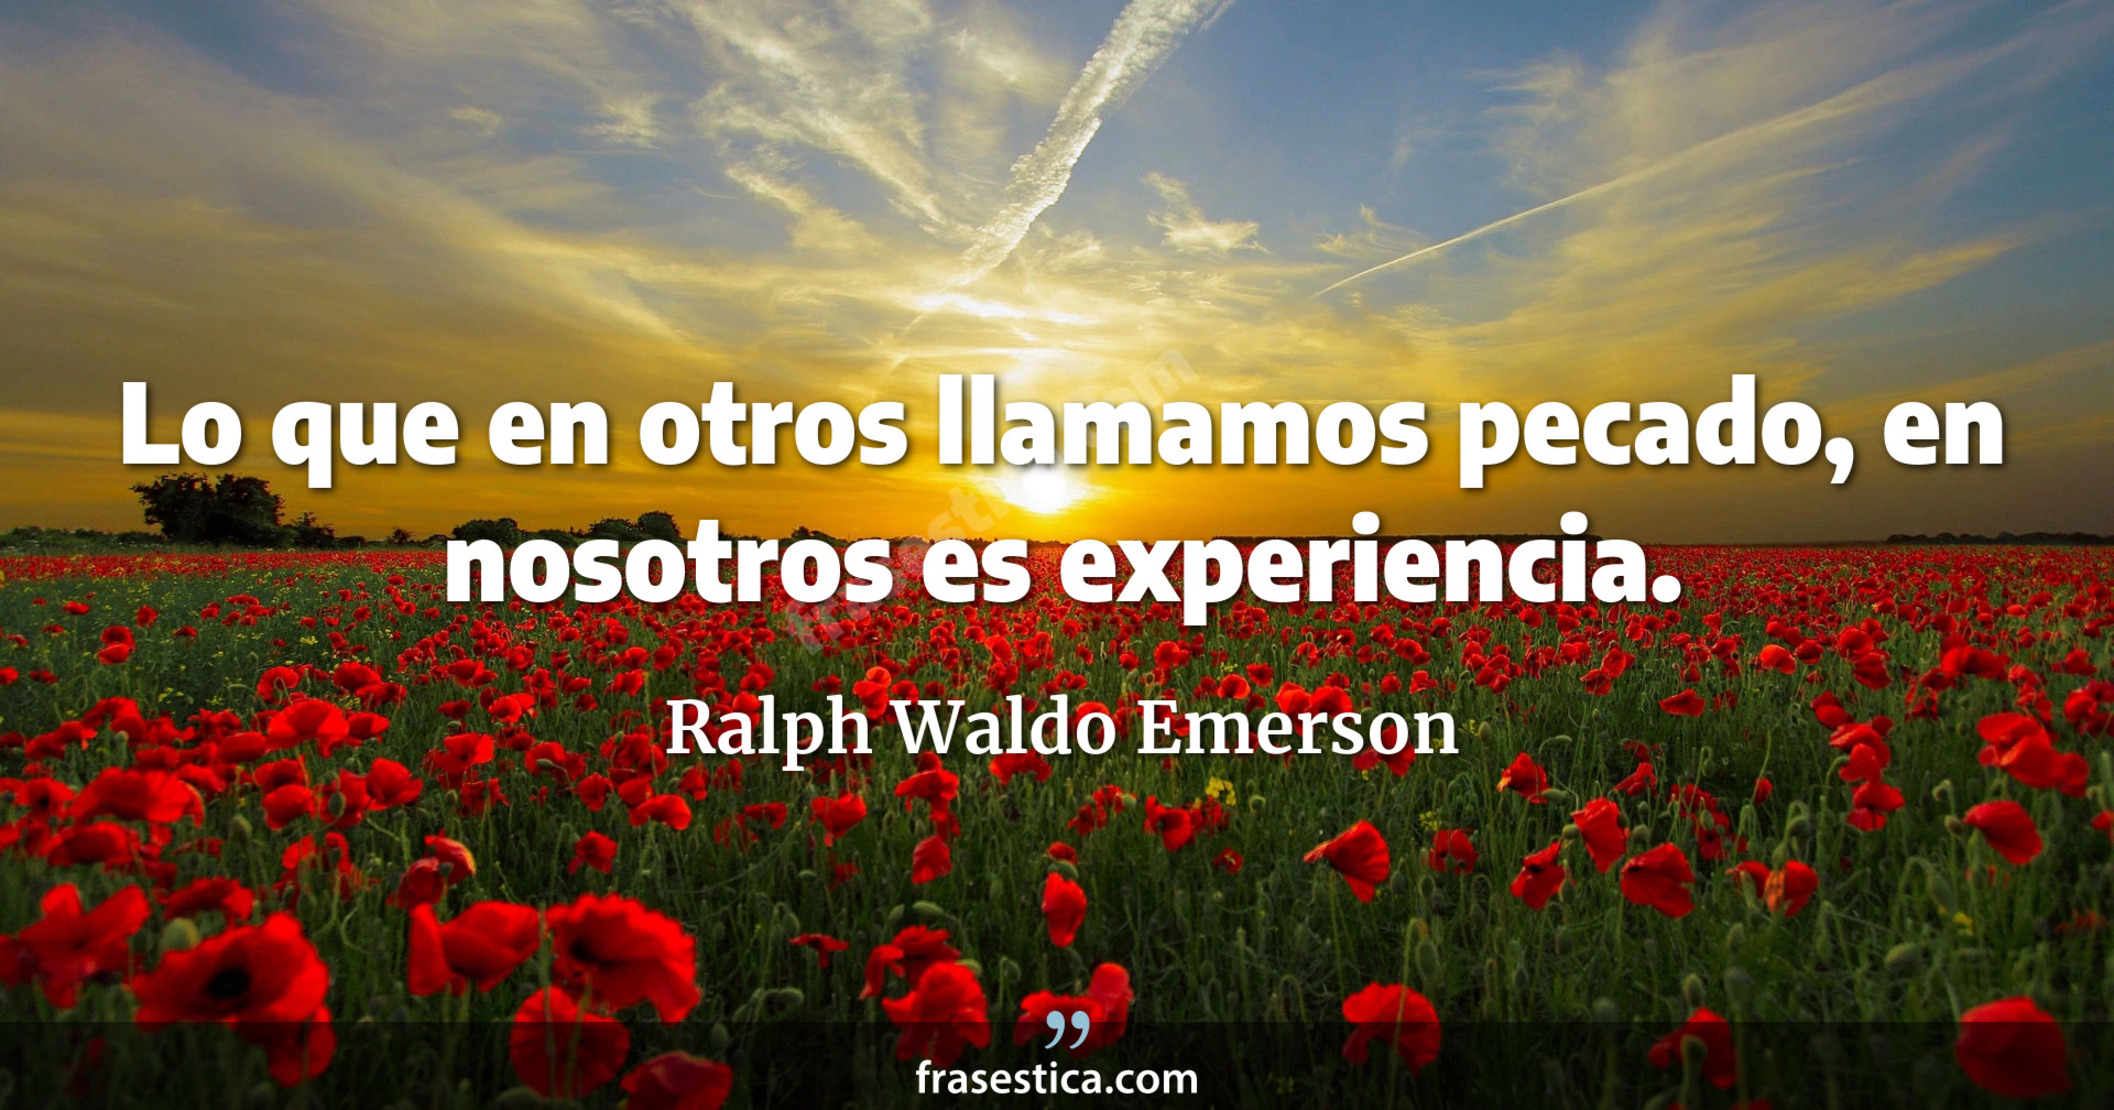 Lo que en otros llamamos pecado, en nosotros es experiencia. - Ralph Waldo Emerson